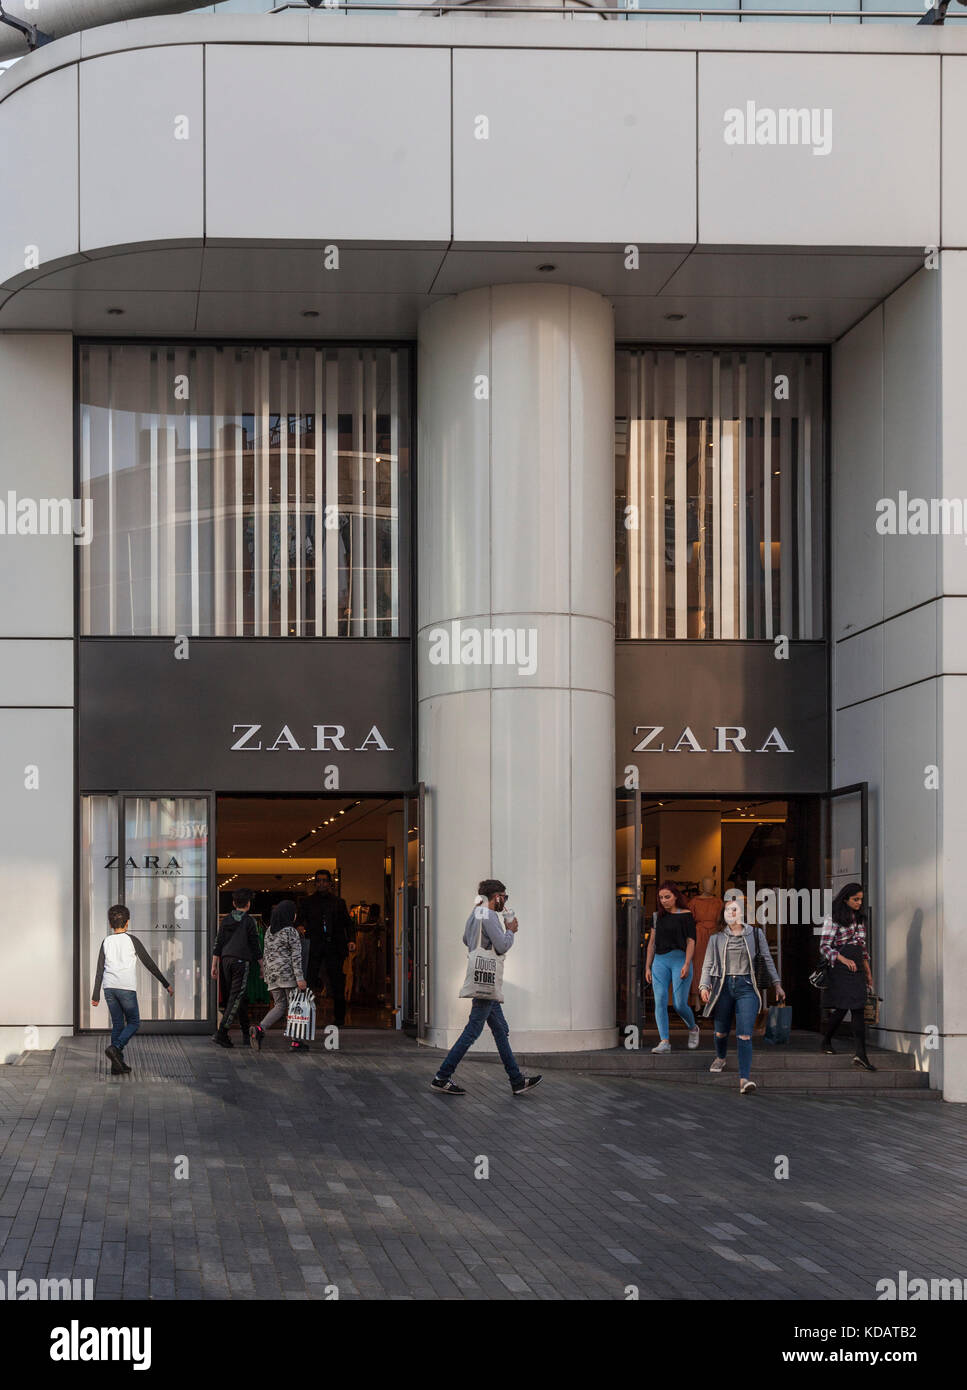 Zara shop Banque de photographies et d'images à haute résolution - Page 2 -  Alamy